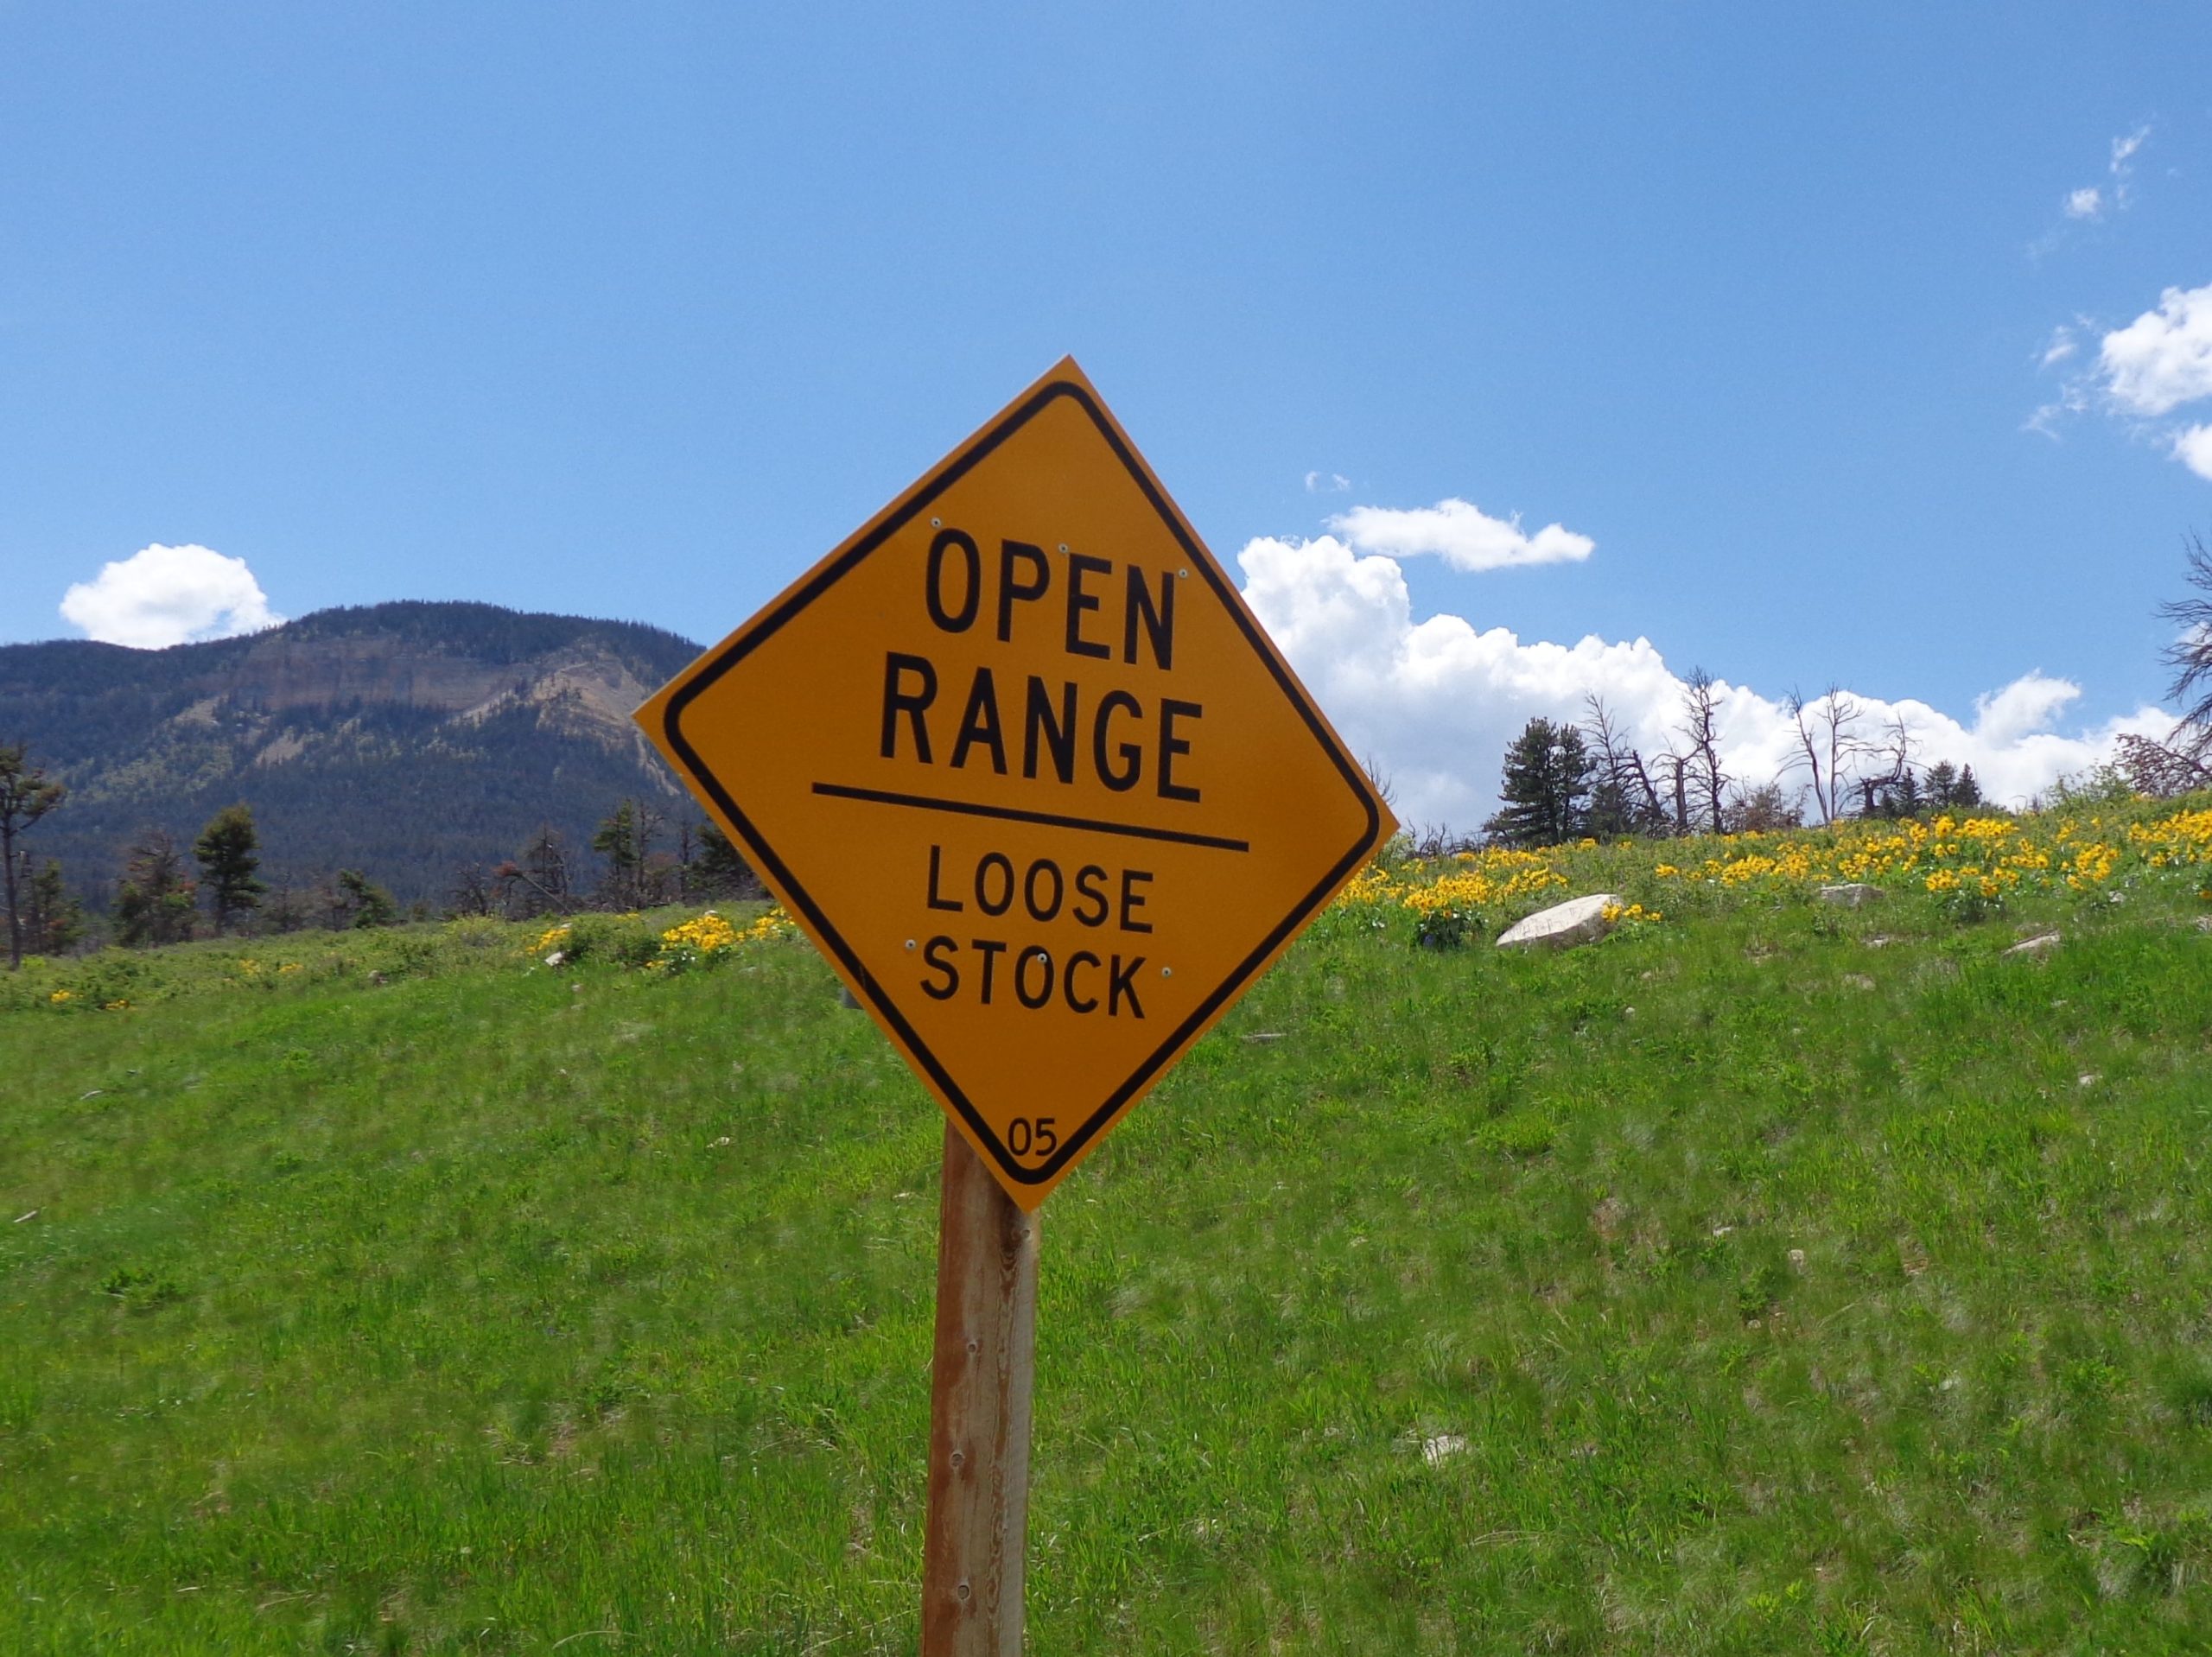 Advertencia para ganado extraviado (campo abierto)